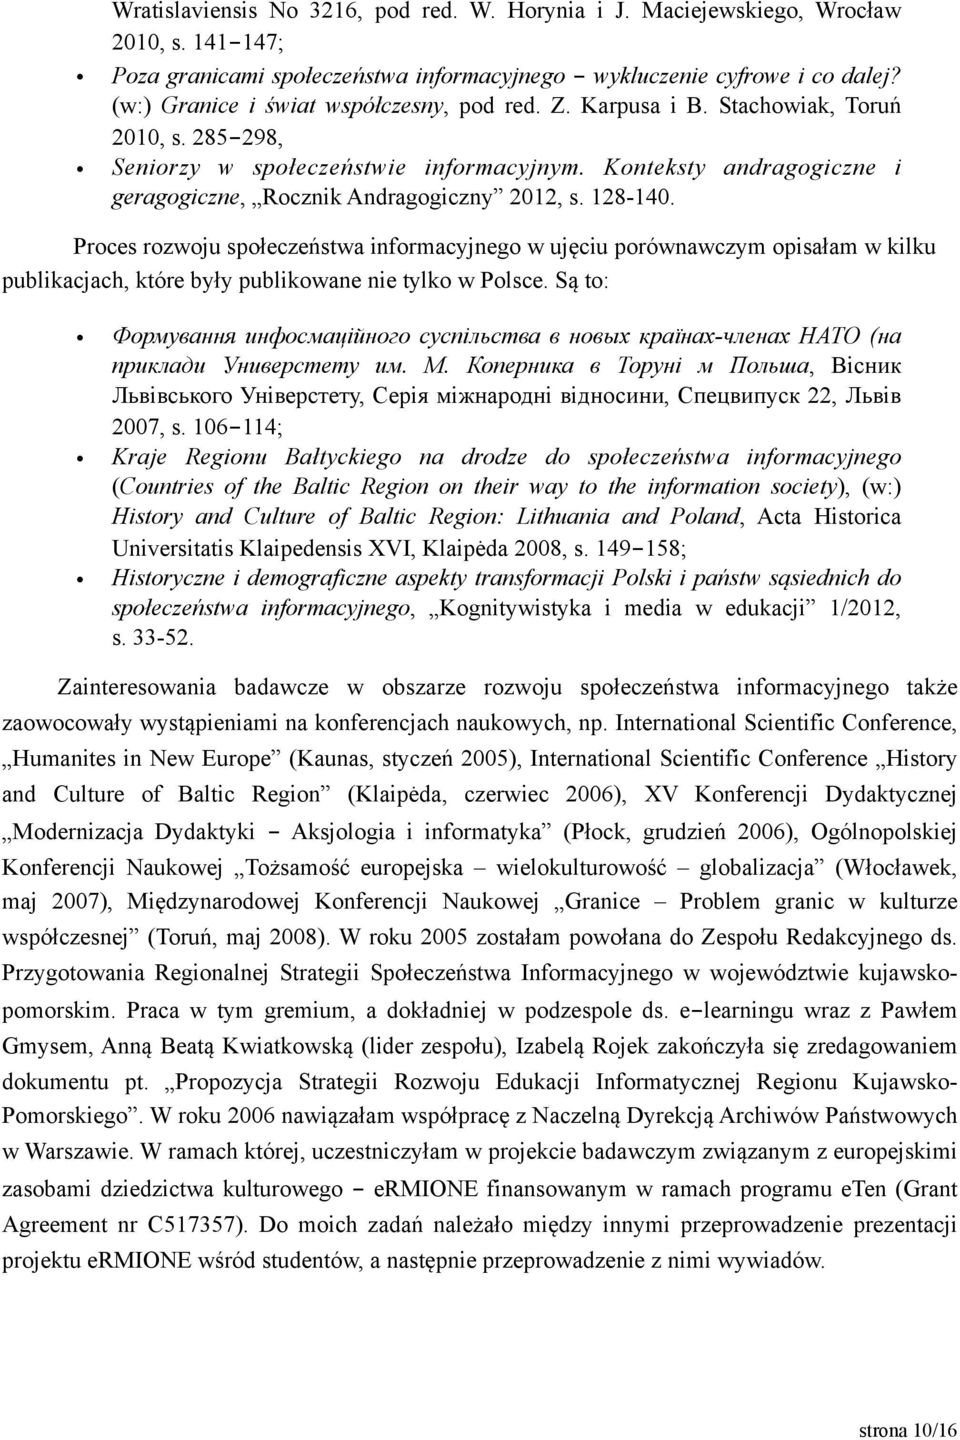 Konteksty andragogiczne i geragogiczne, Rocznik Andragogiczny 2012, s. 128-140.